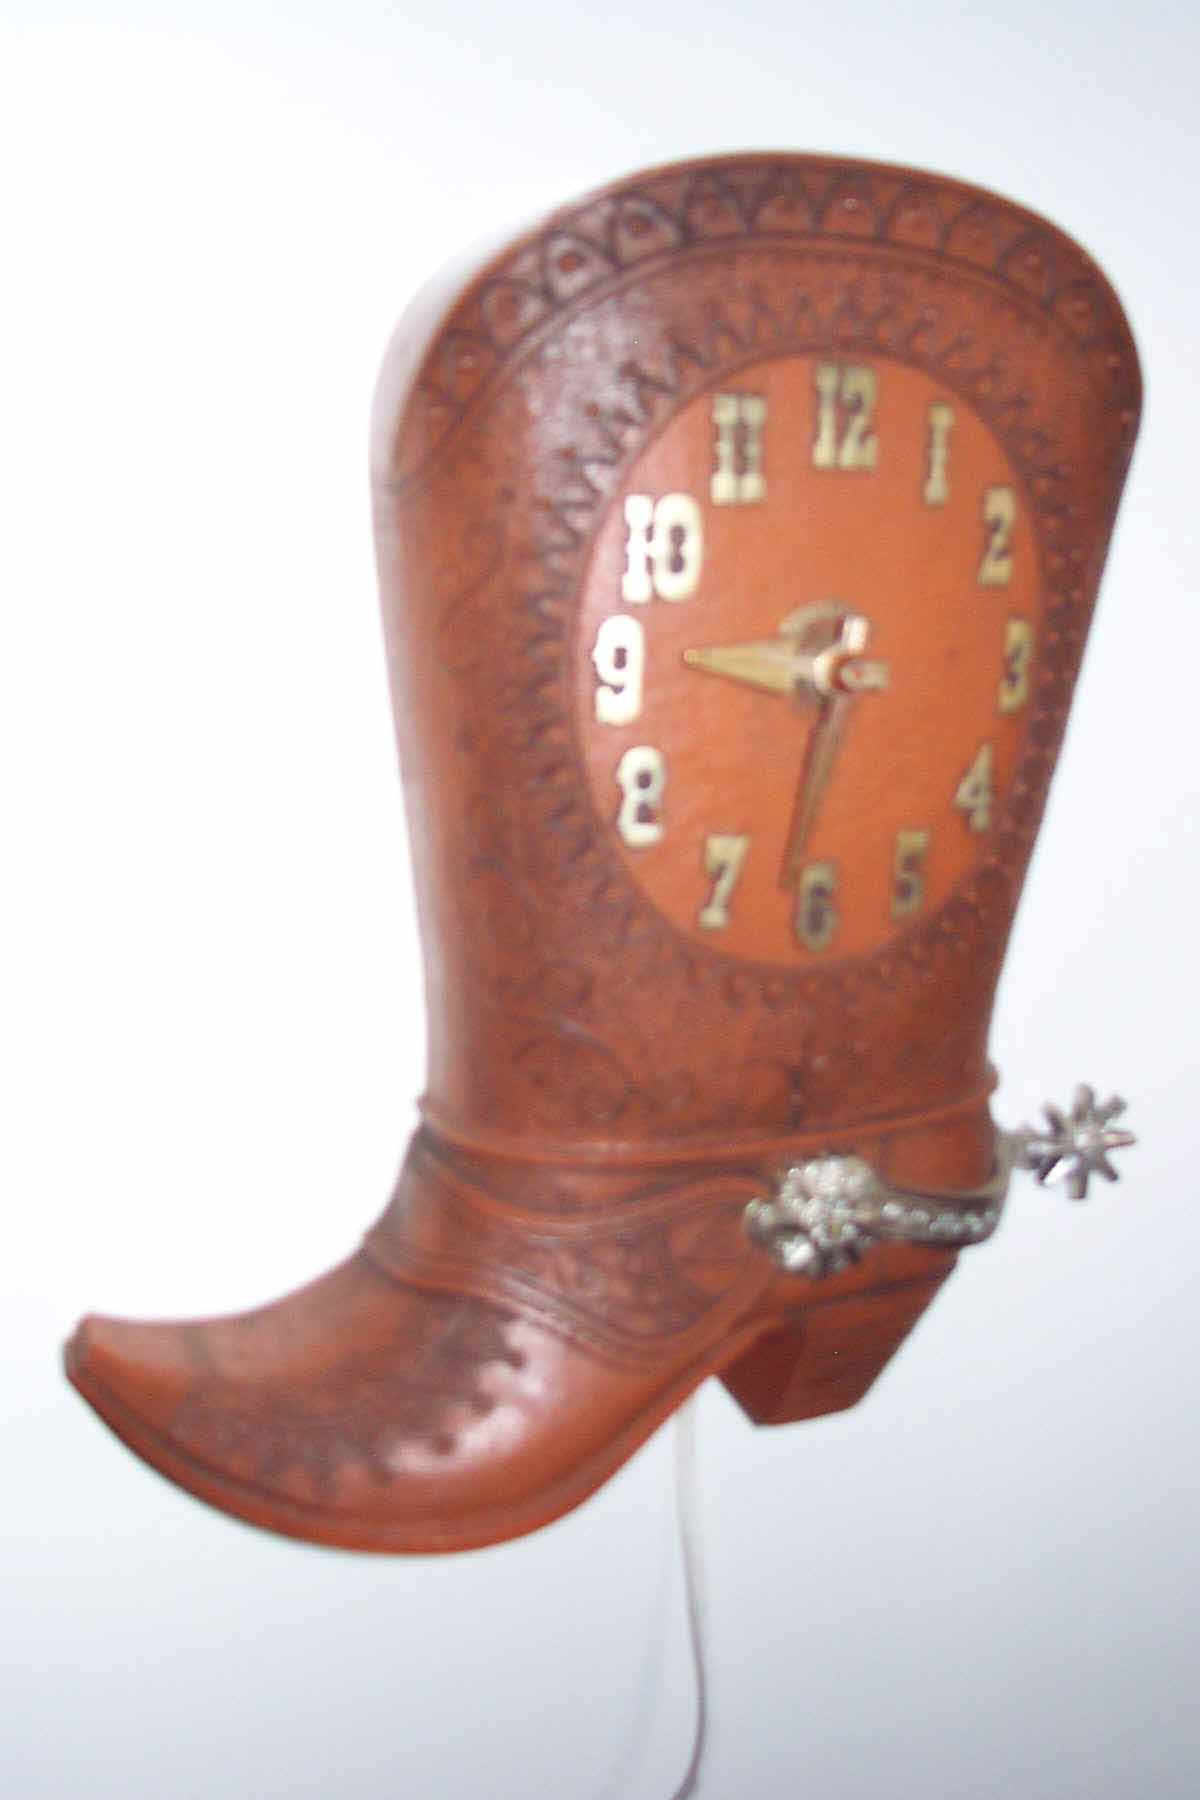 Spartus Cowboy Boot 50's vintage clock 